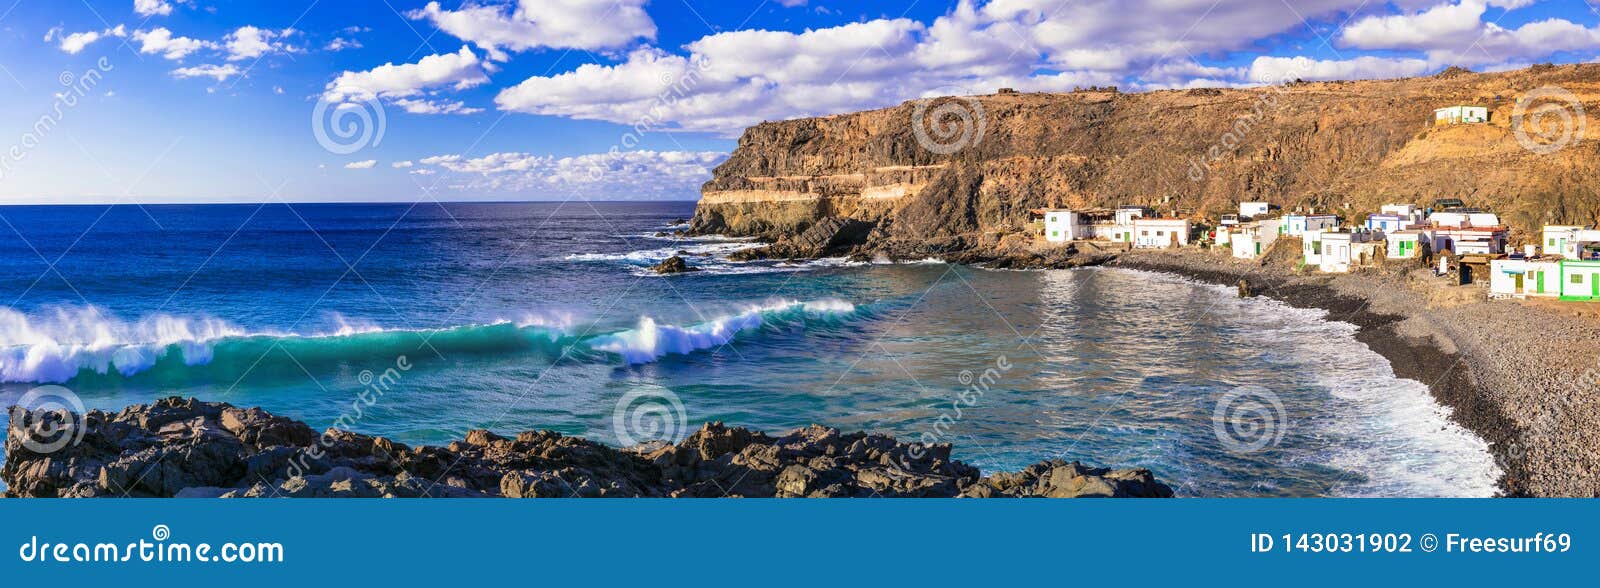 beautiful nature and sea of fuerteventura. traditional fishing village puertito de los molinos. canary islands